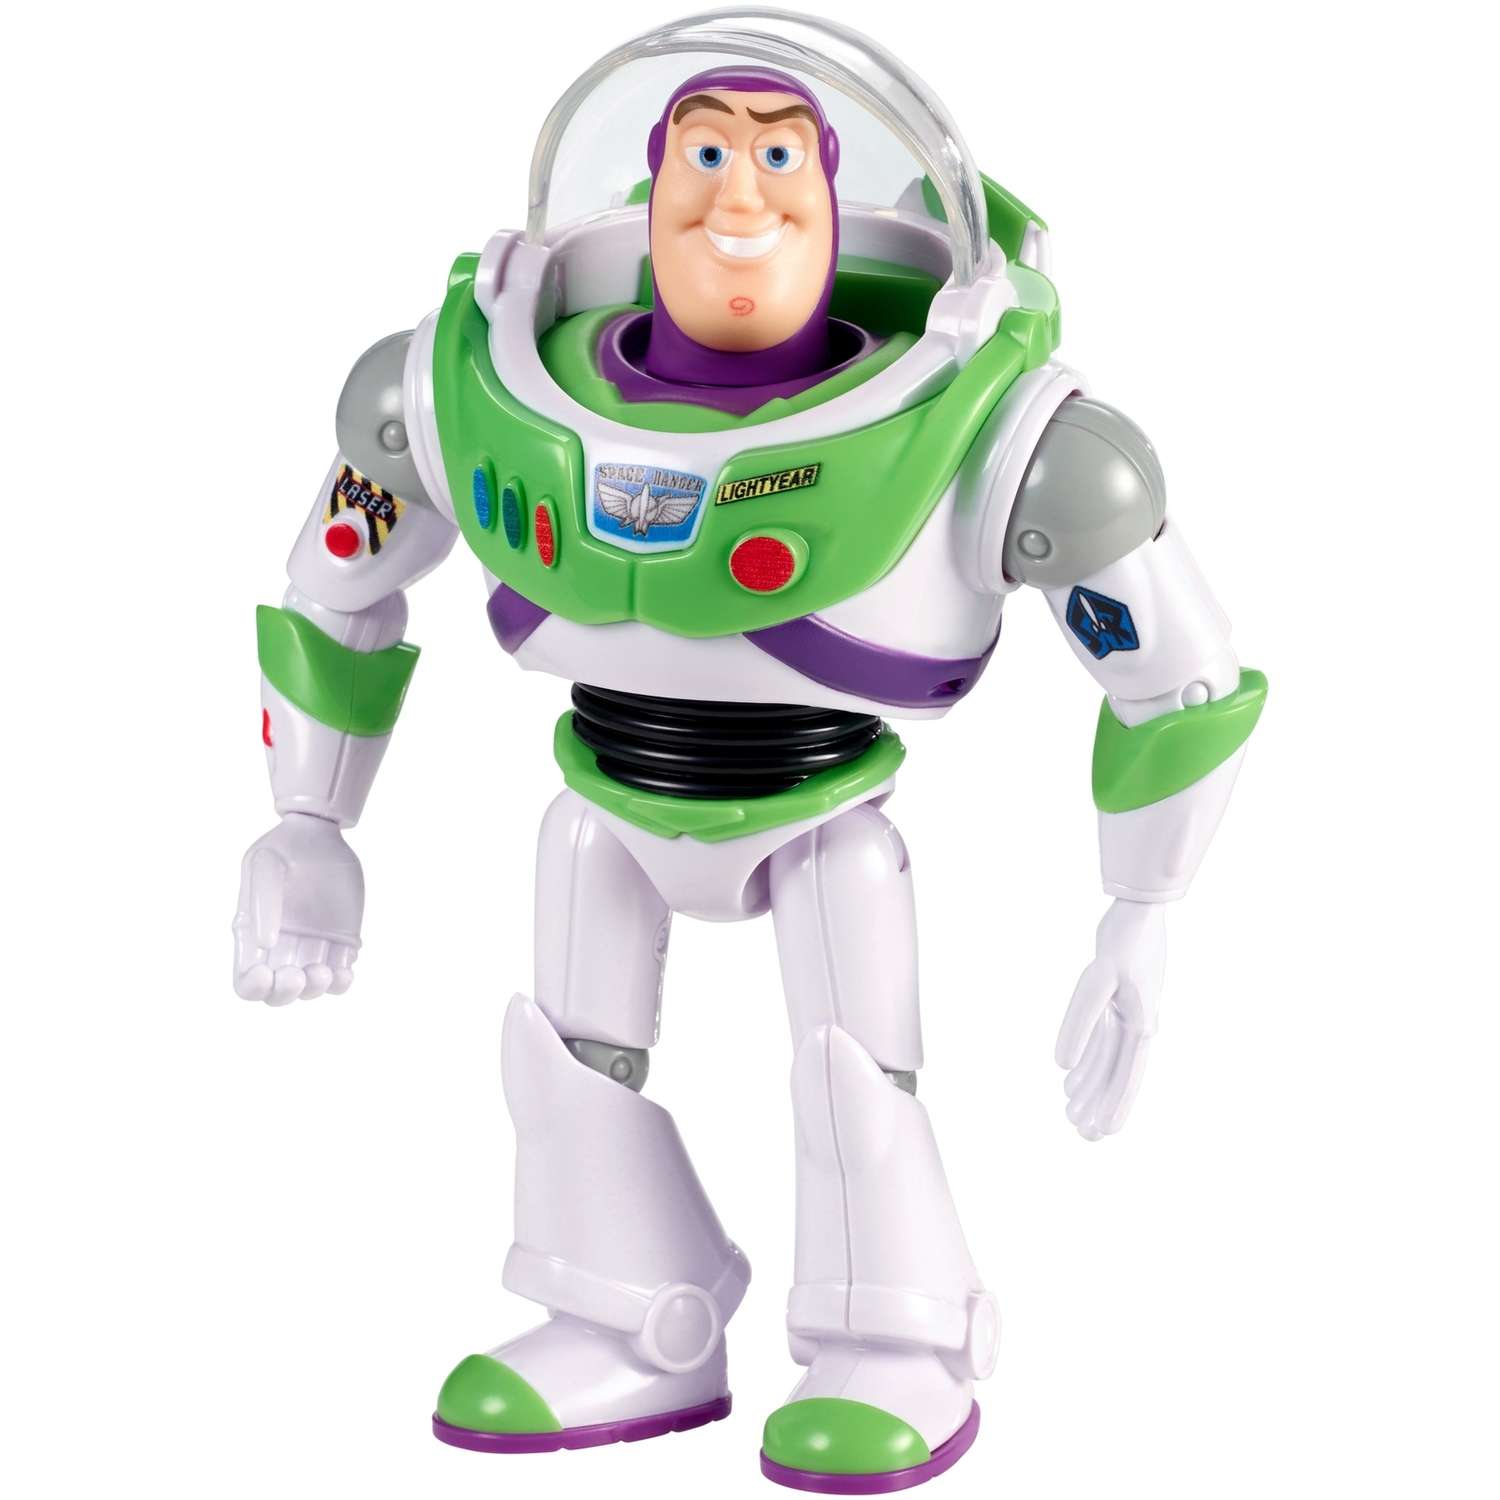 Фигурка Toy Story История игрушек 4 Базз Лайтер в шлеме GGP60 - фото 1